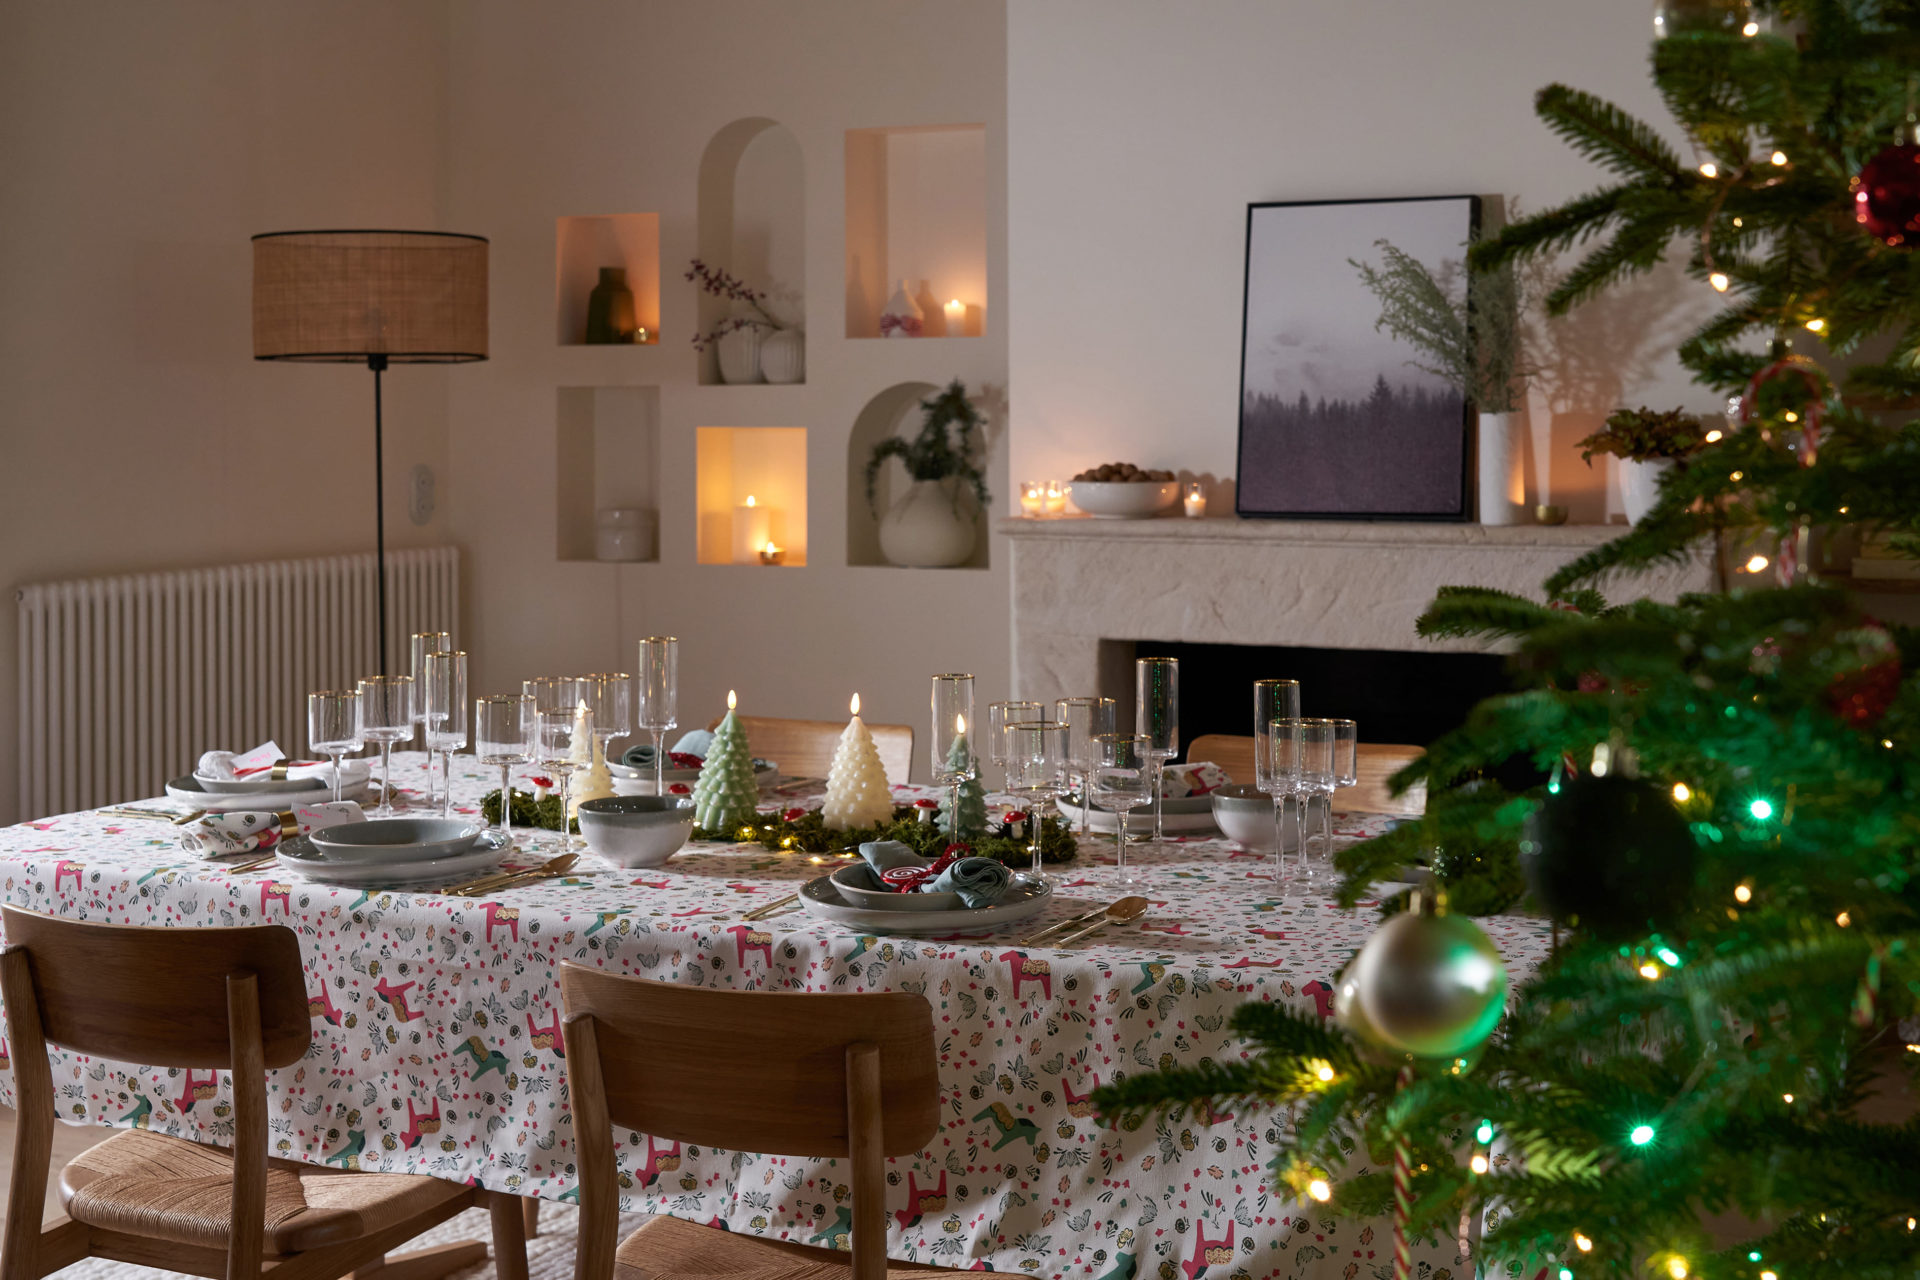 Sugestões de decoração de Natal La Redoute da especialista Ana Antunes